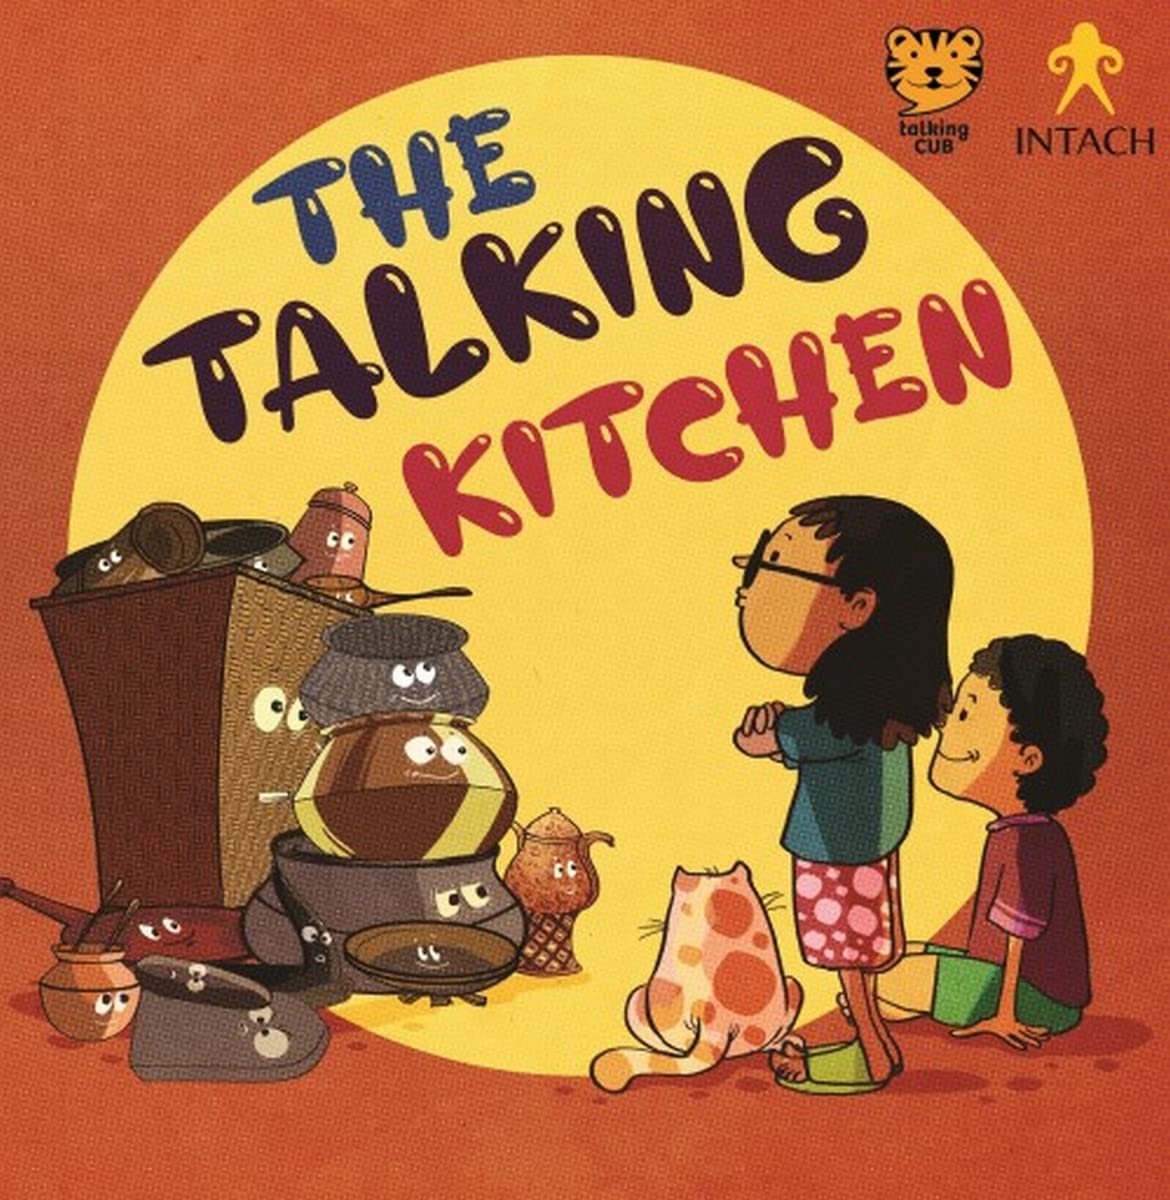 The Talking Kitchen